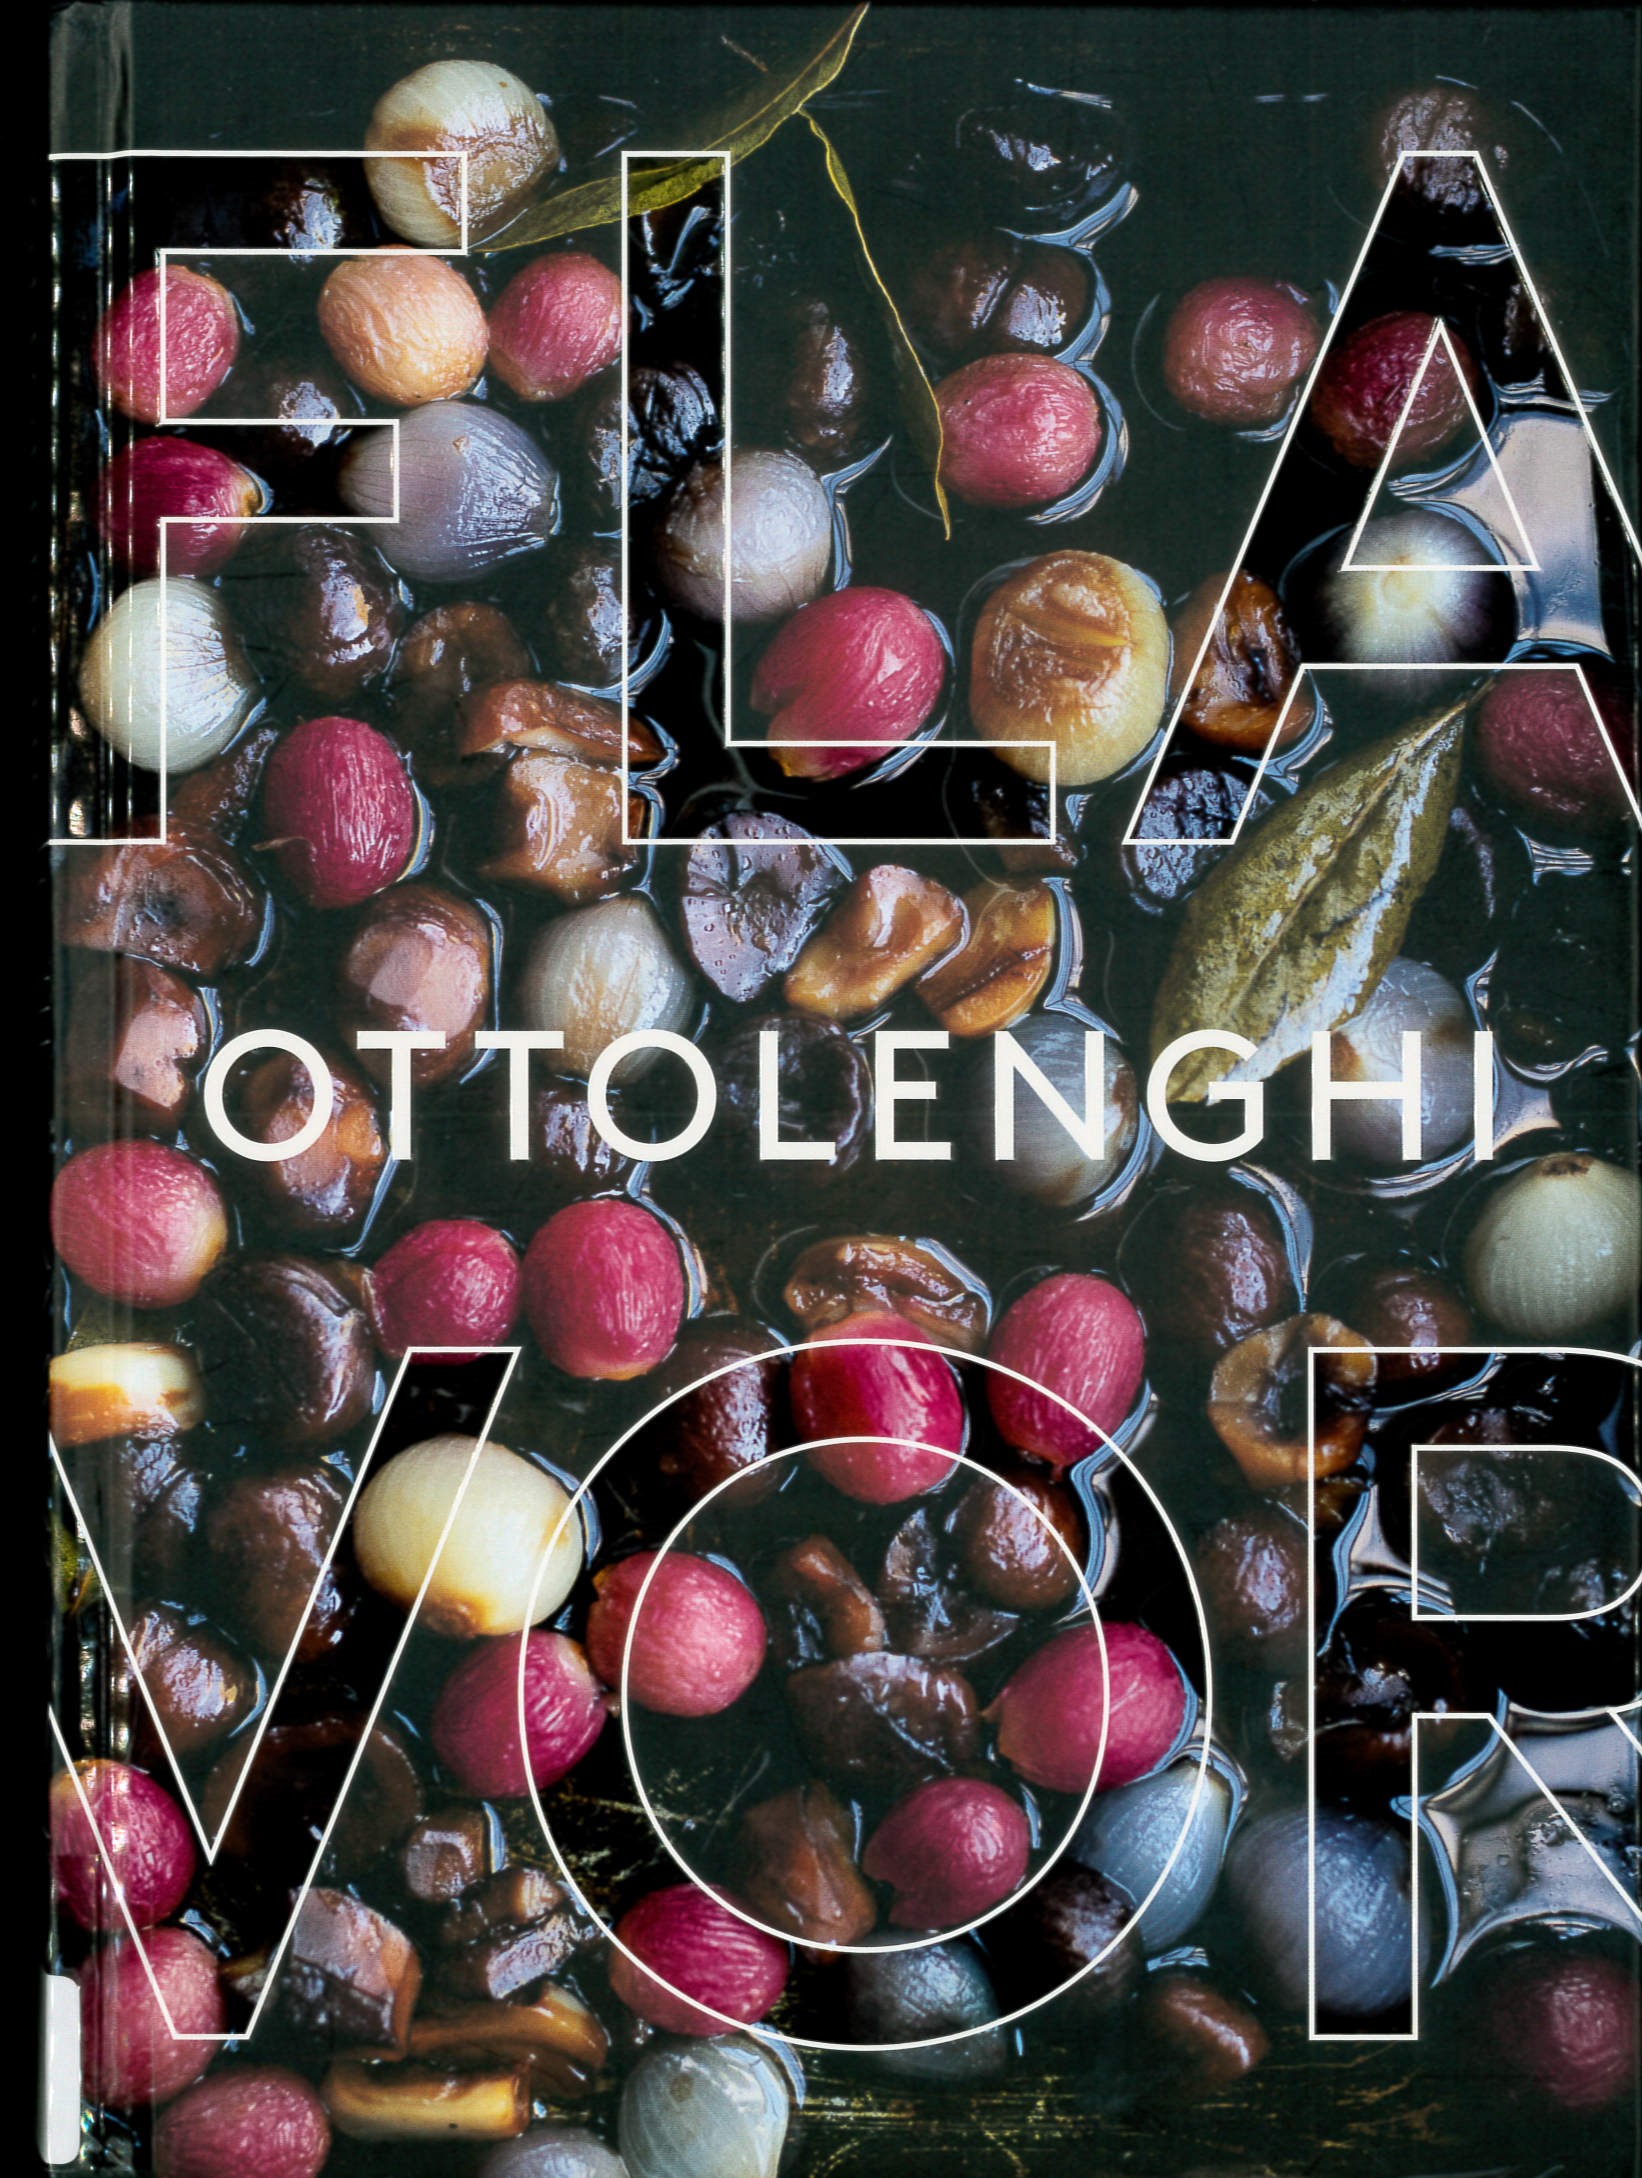 Ottolenghi flavor /